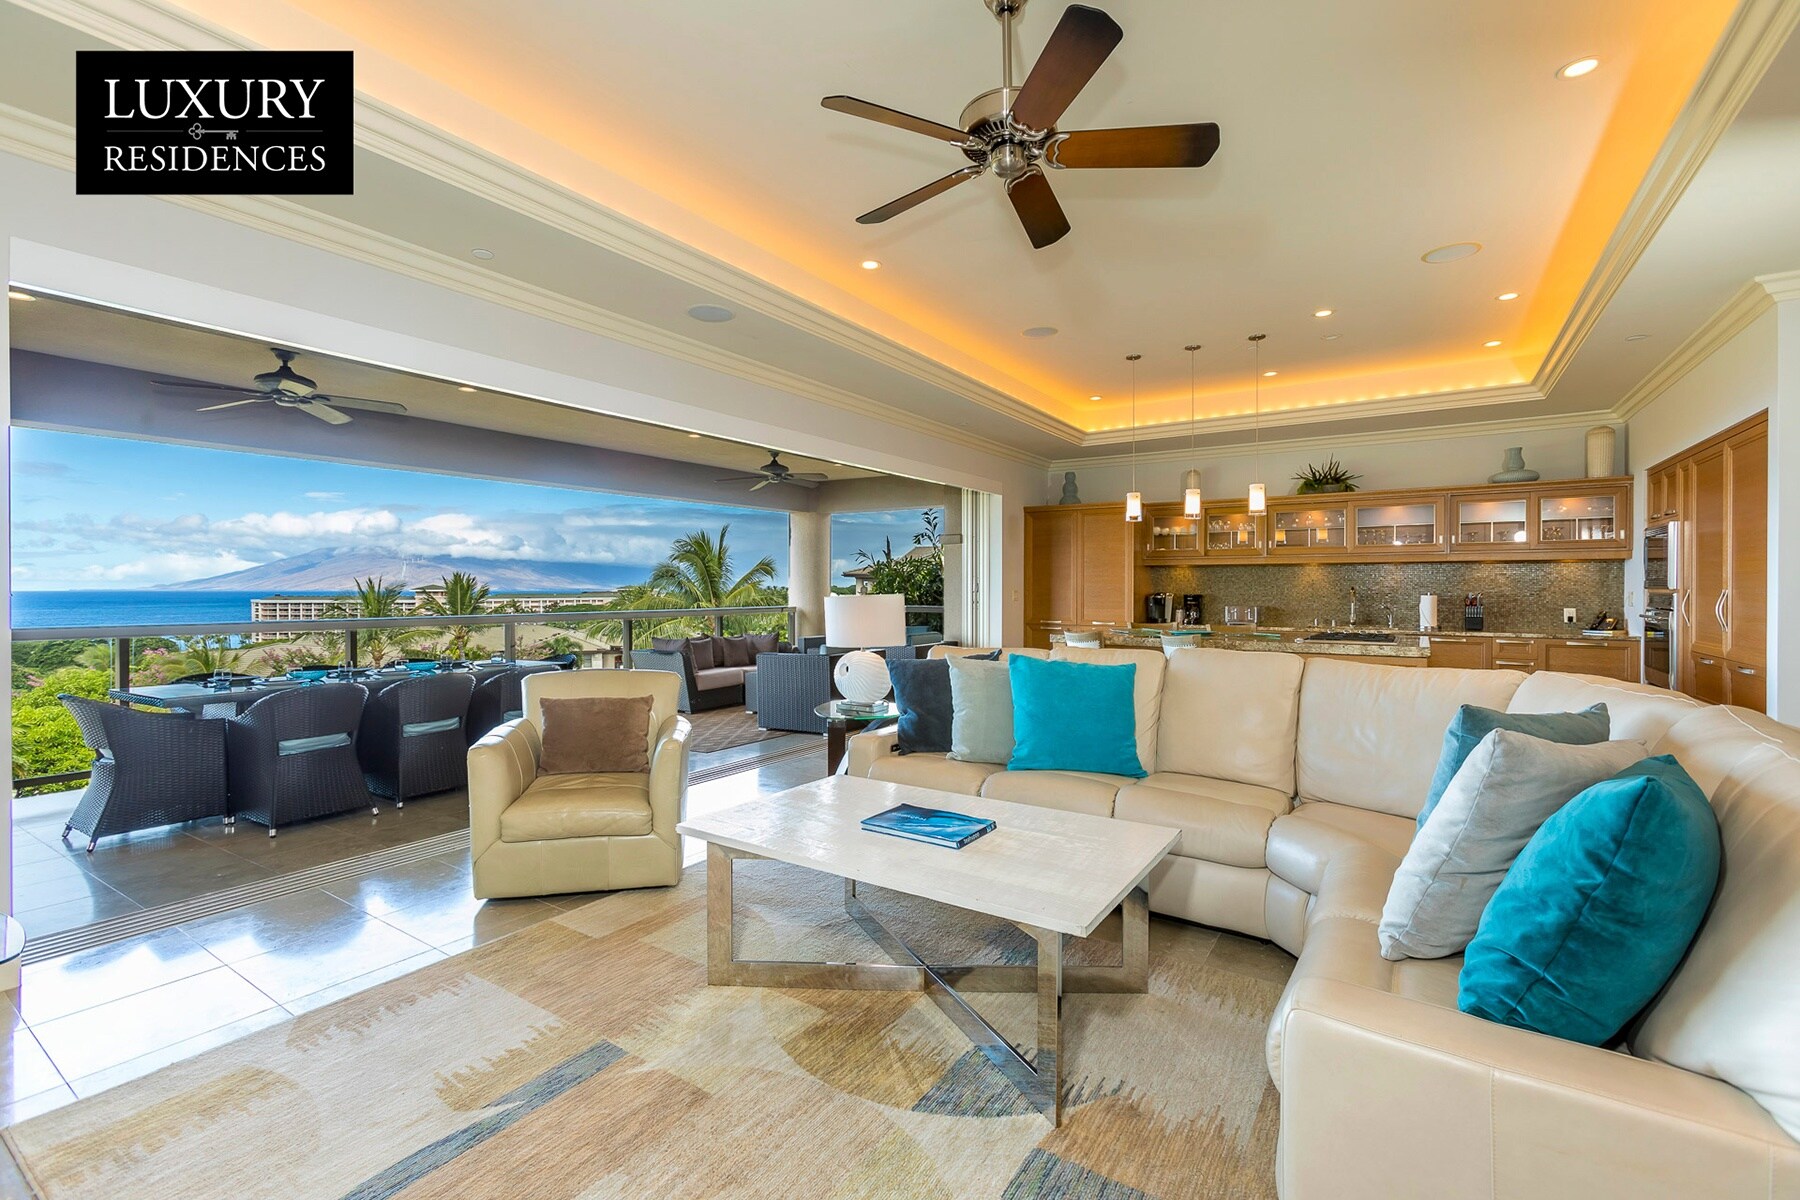 Enjoy your indoor/outdoor living space with amazing ocean views!